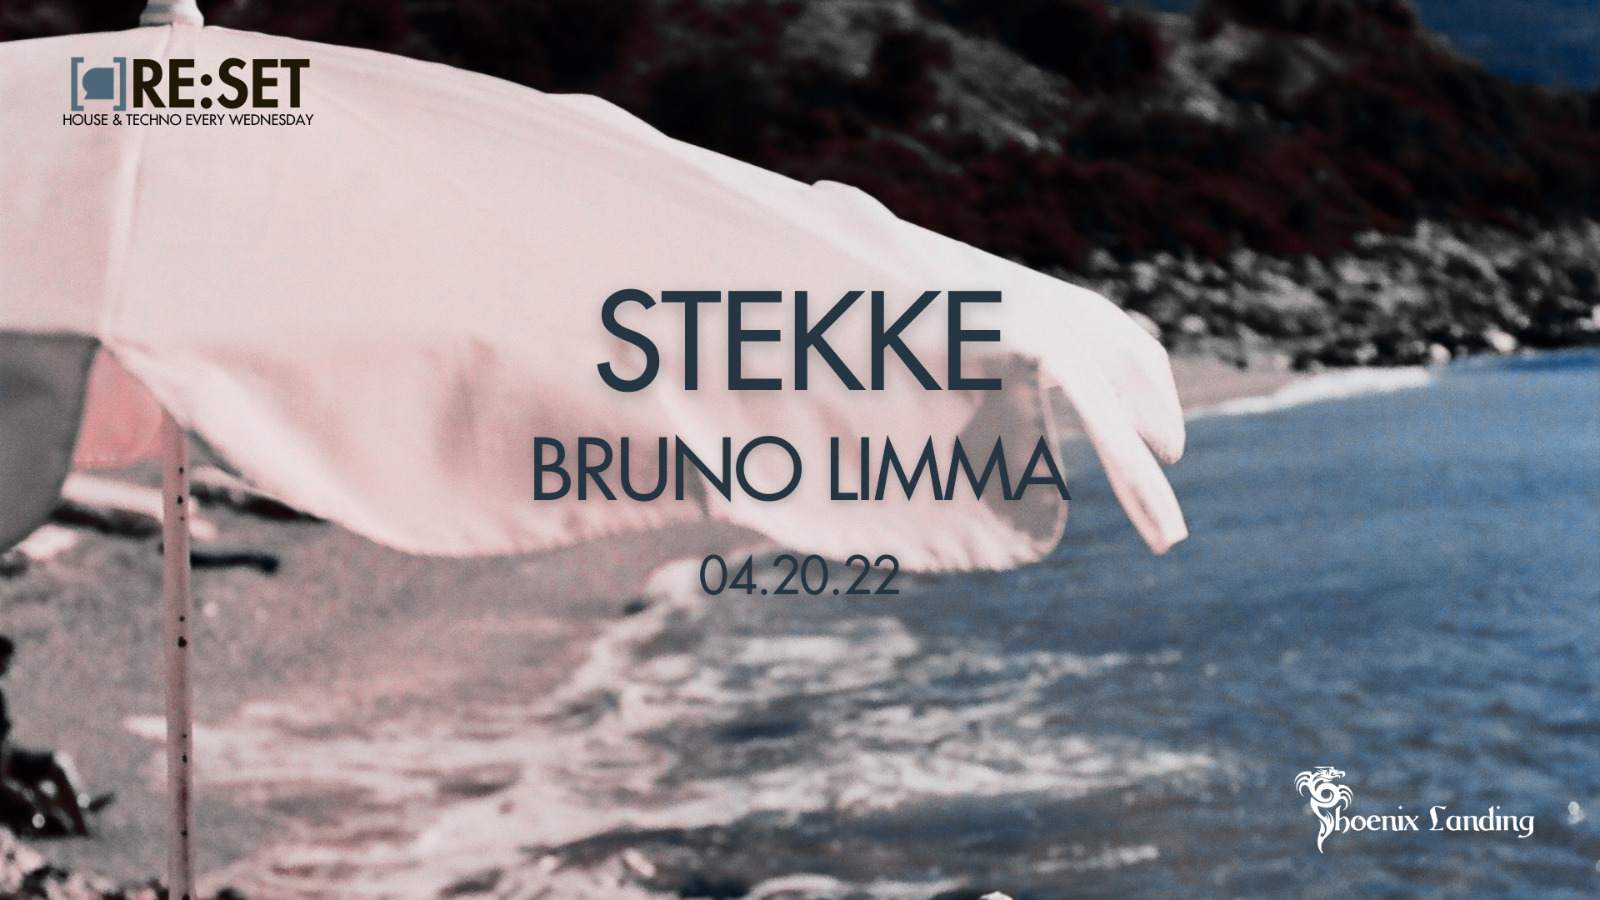 Re:Set with Stekke & Bruno Limma - フライヤー表